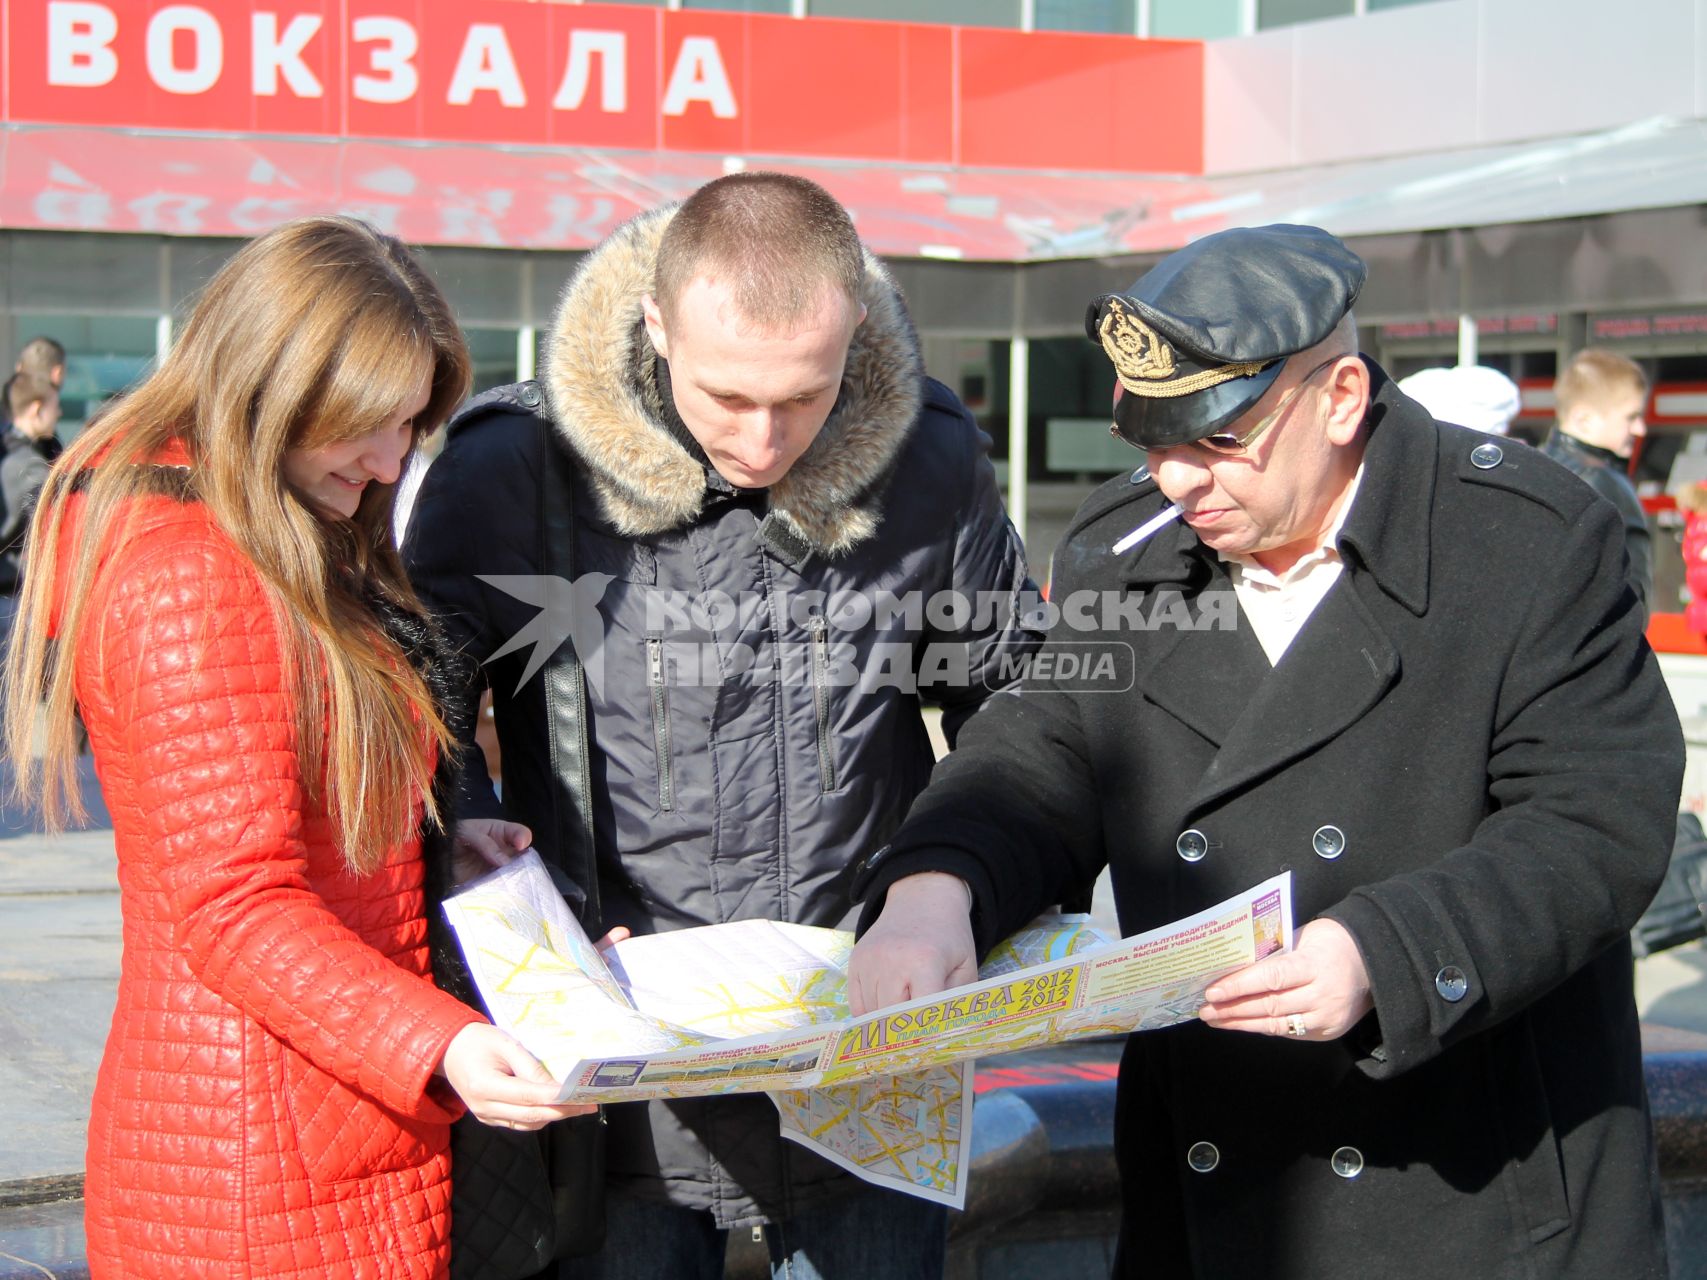 Три человека около вокзала изучают карту Москвы.